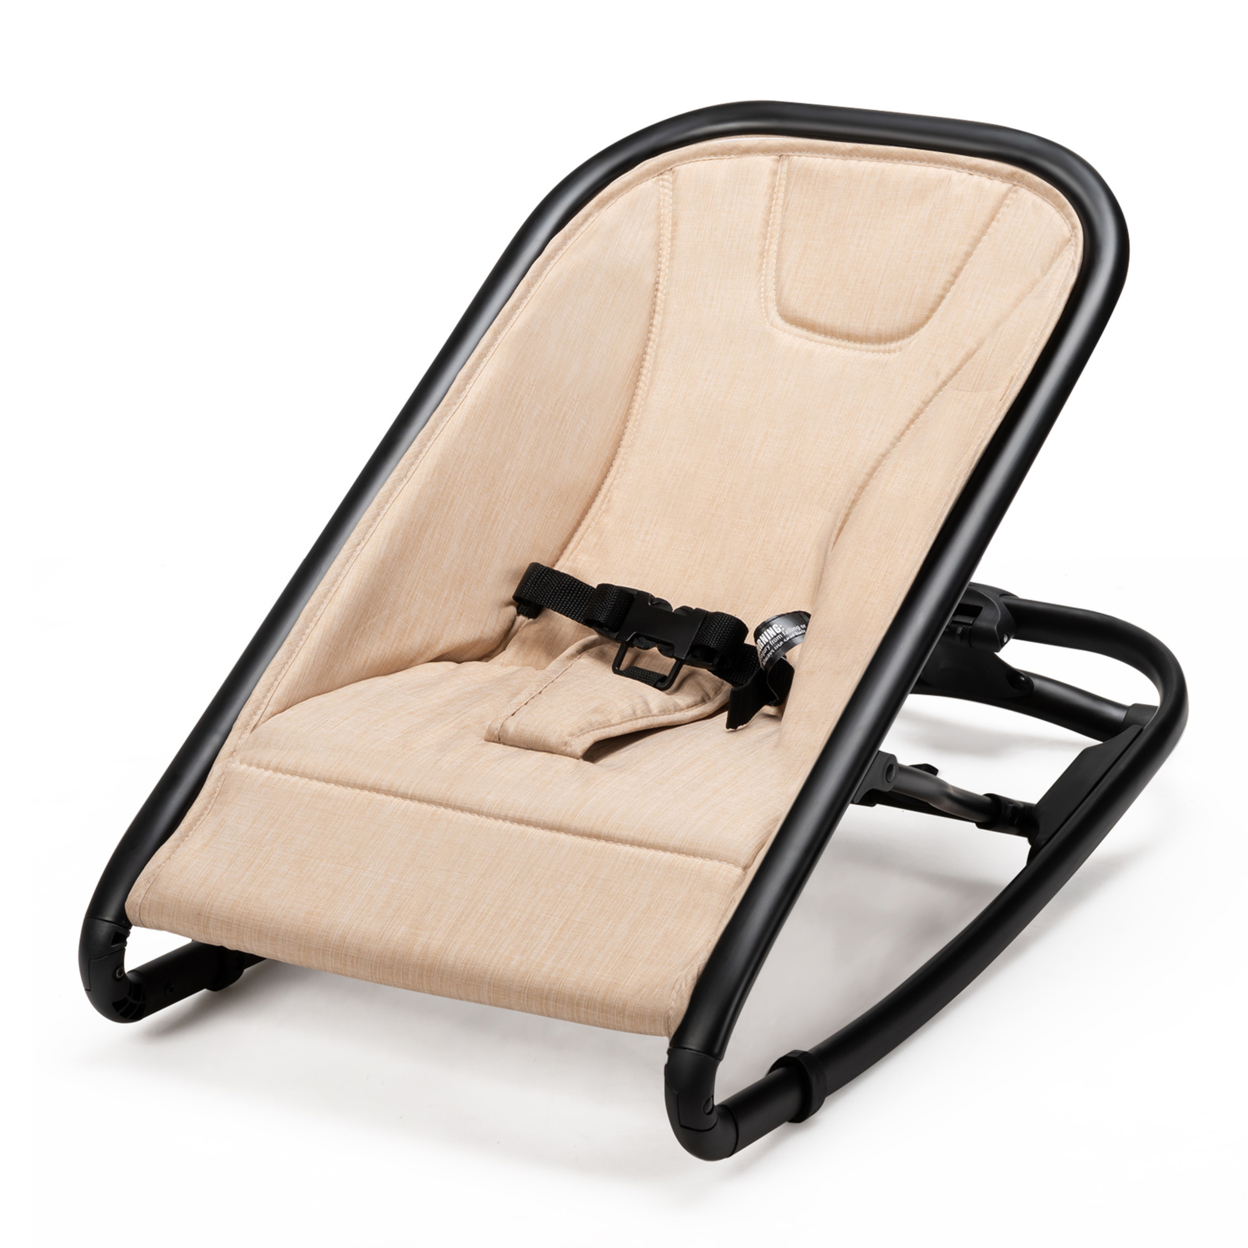 2 In 1 Folding Baby Rocker Bouncer Seat W/ 2 Adjustable Recline Positions - Beige